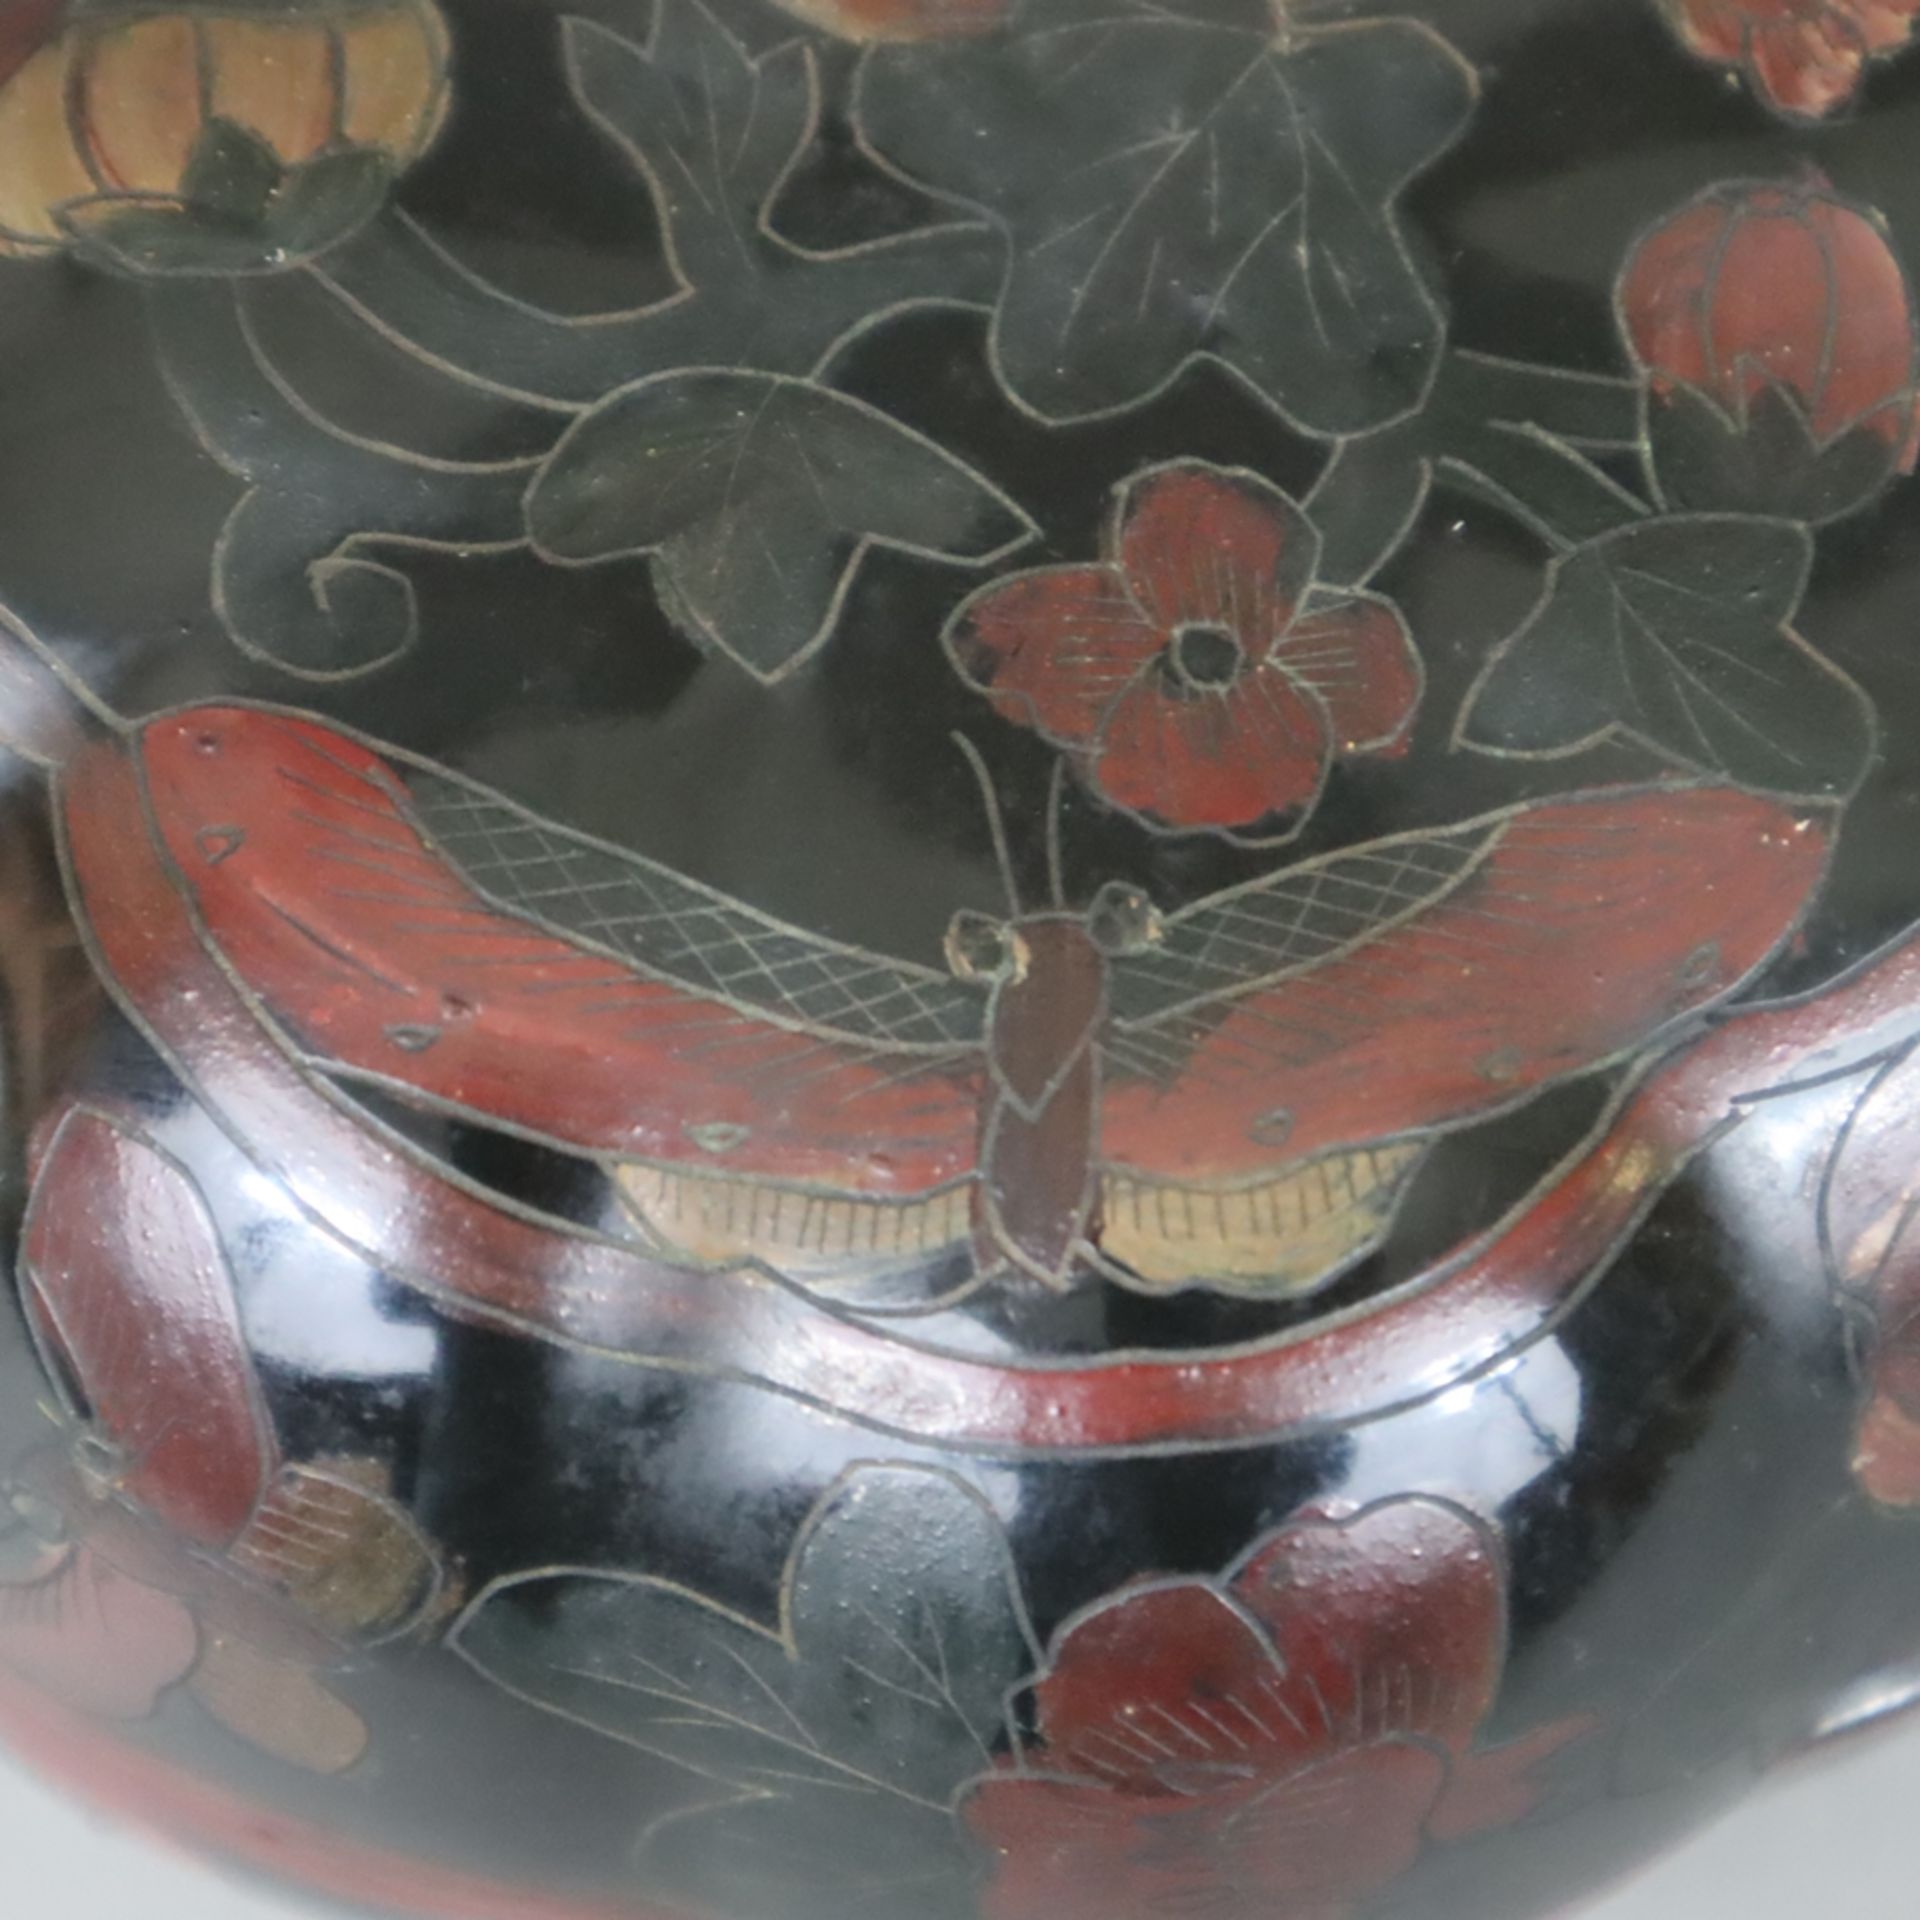 Lackdose - Kürbisform mit Stülpdeckel, schwarzer und roter Lack auf Pappmaché, graviert und bemalt, - Bild 3 aus 8